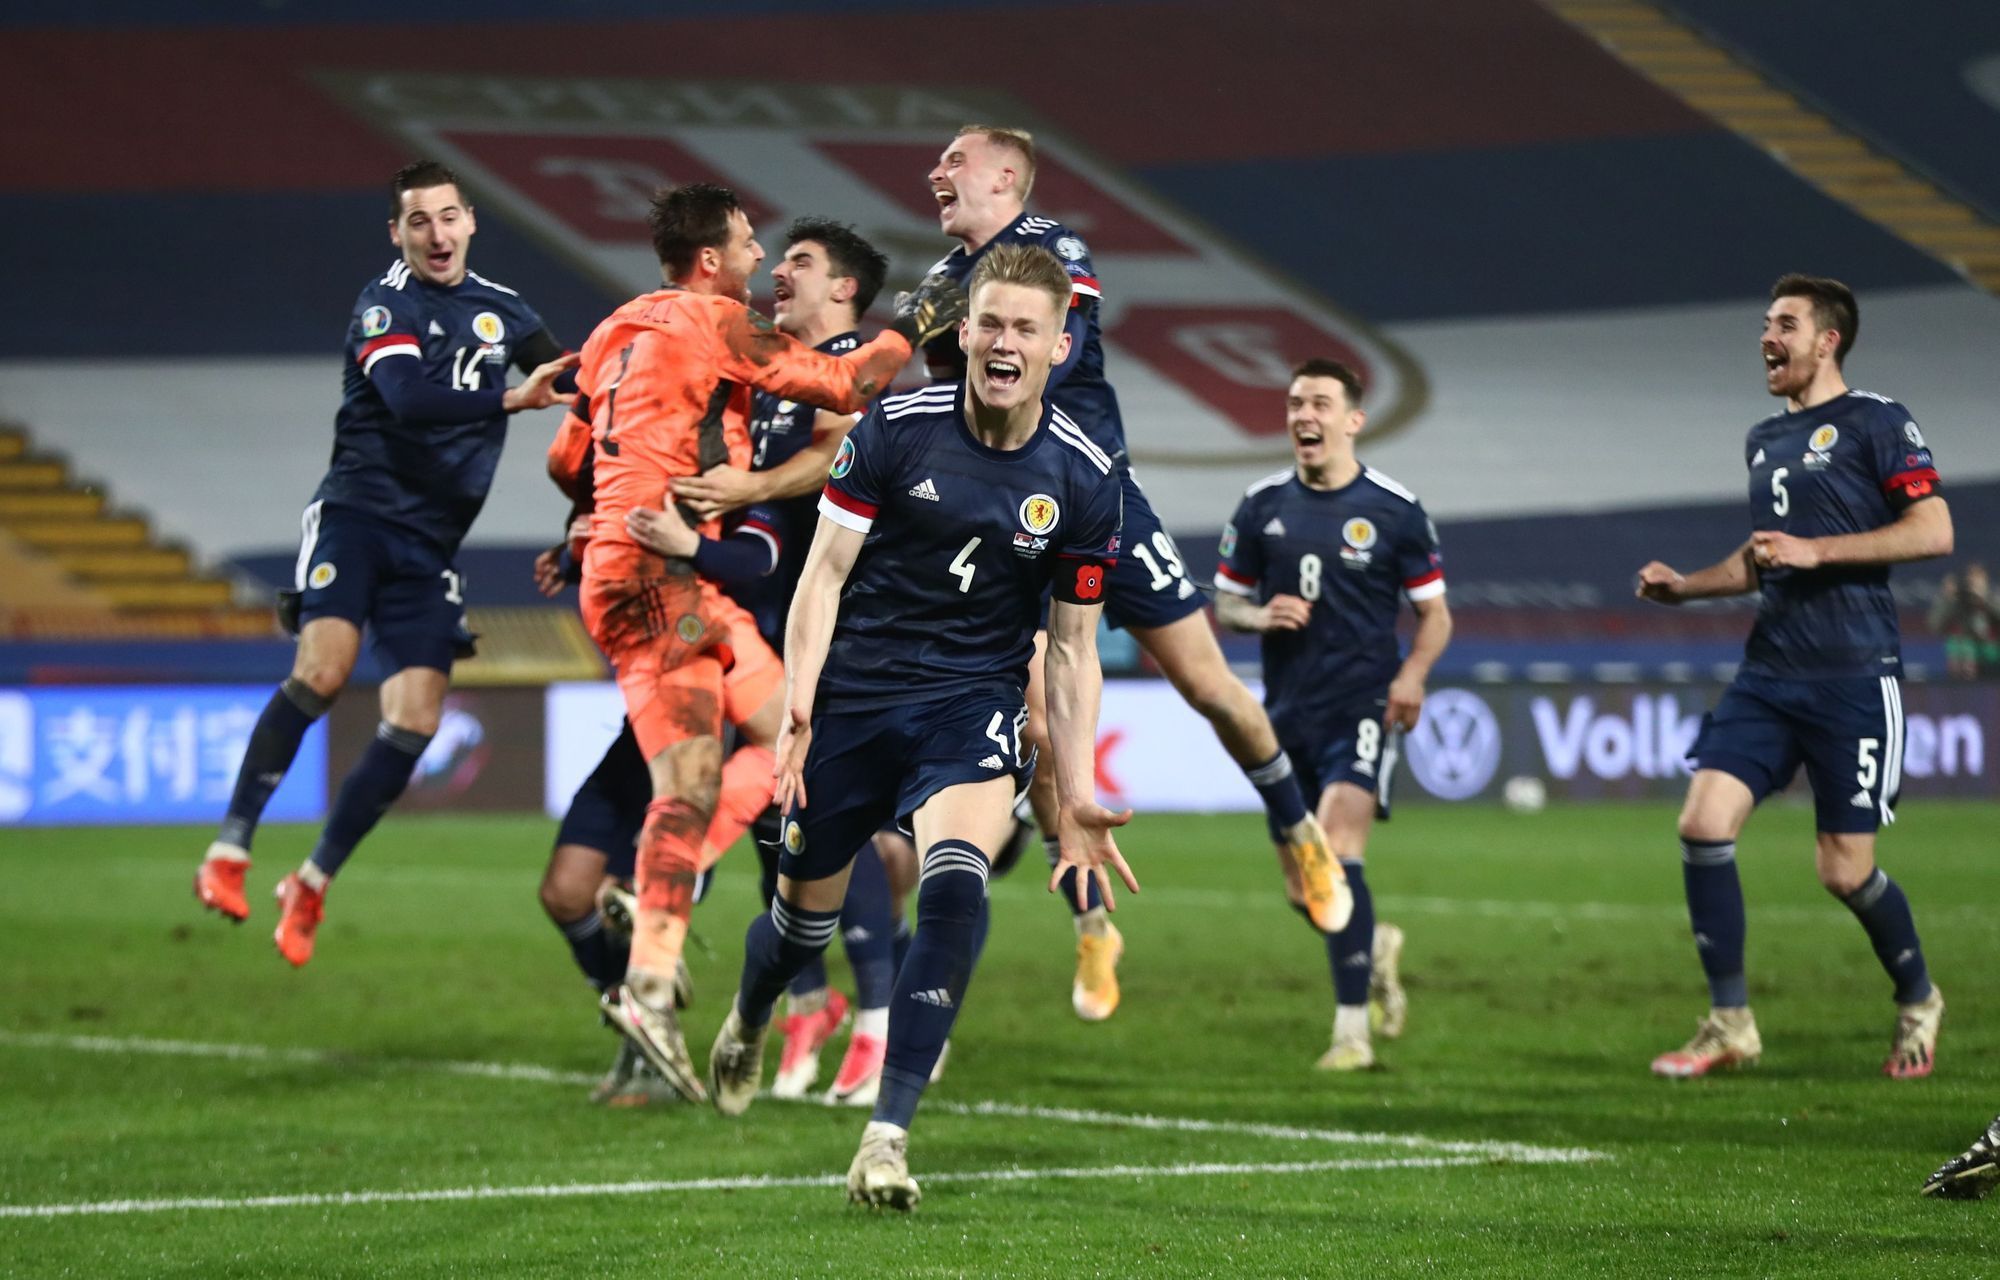 Euro 2020 Playoff Final - Serbia v Scotland